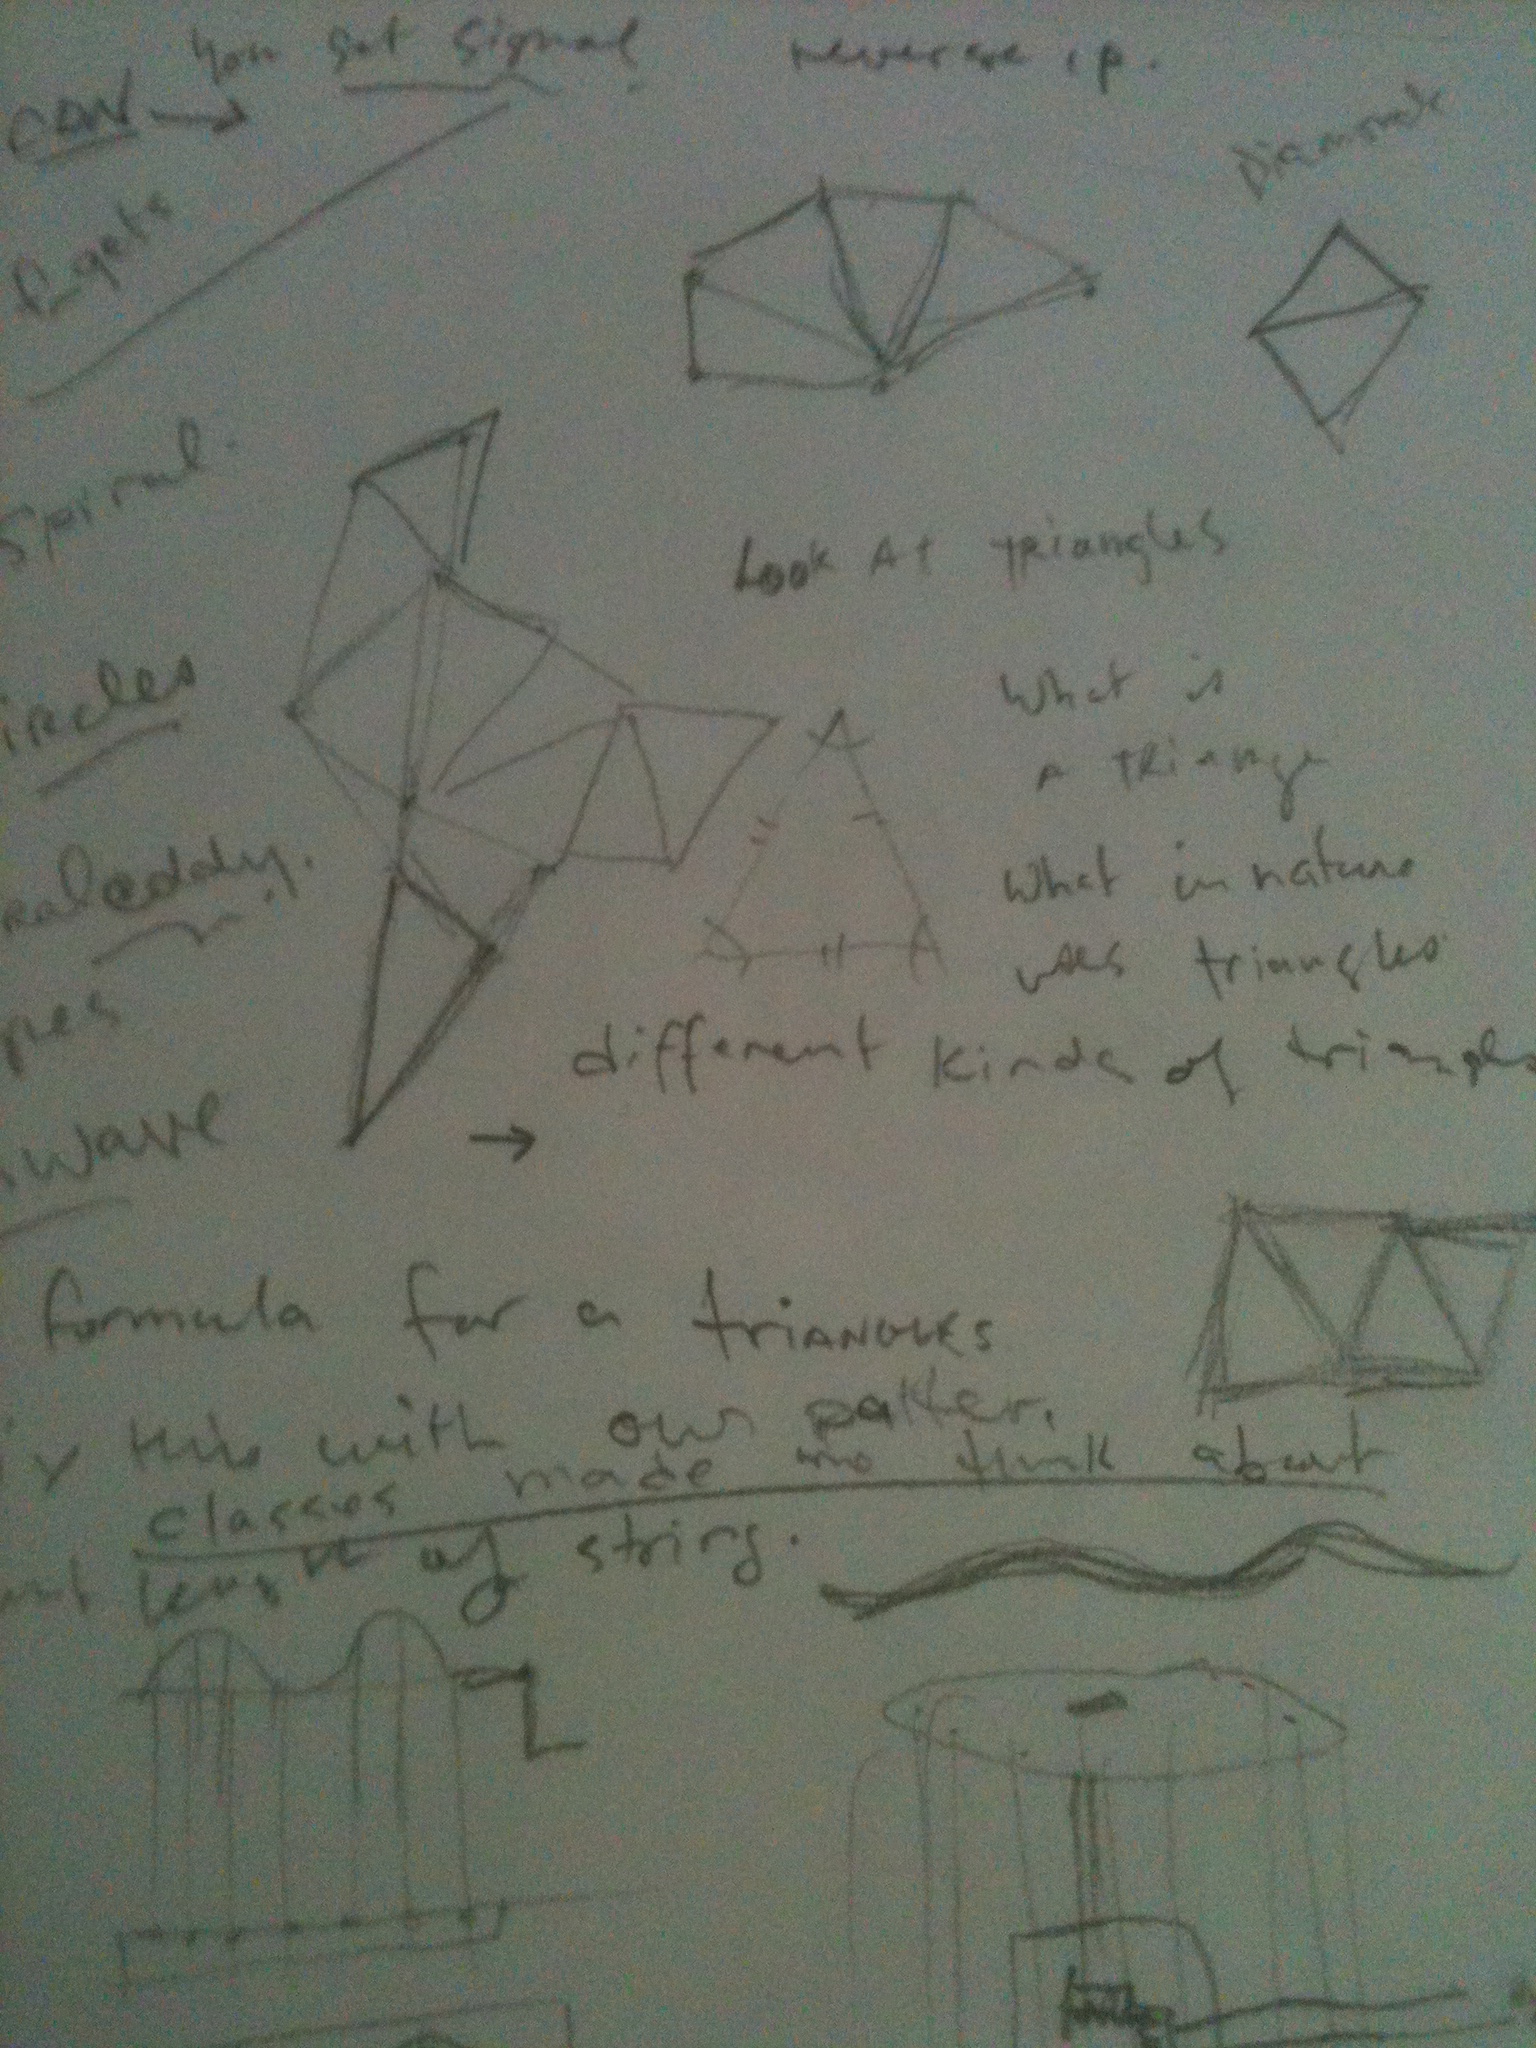 Kinetic Sculpture Plans